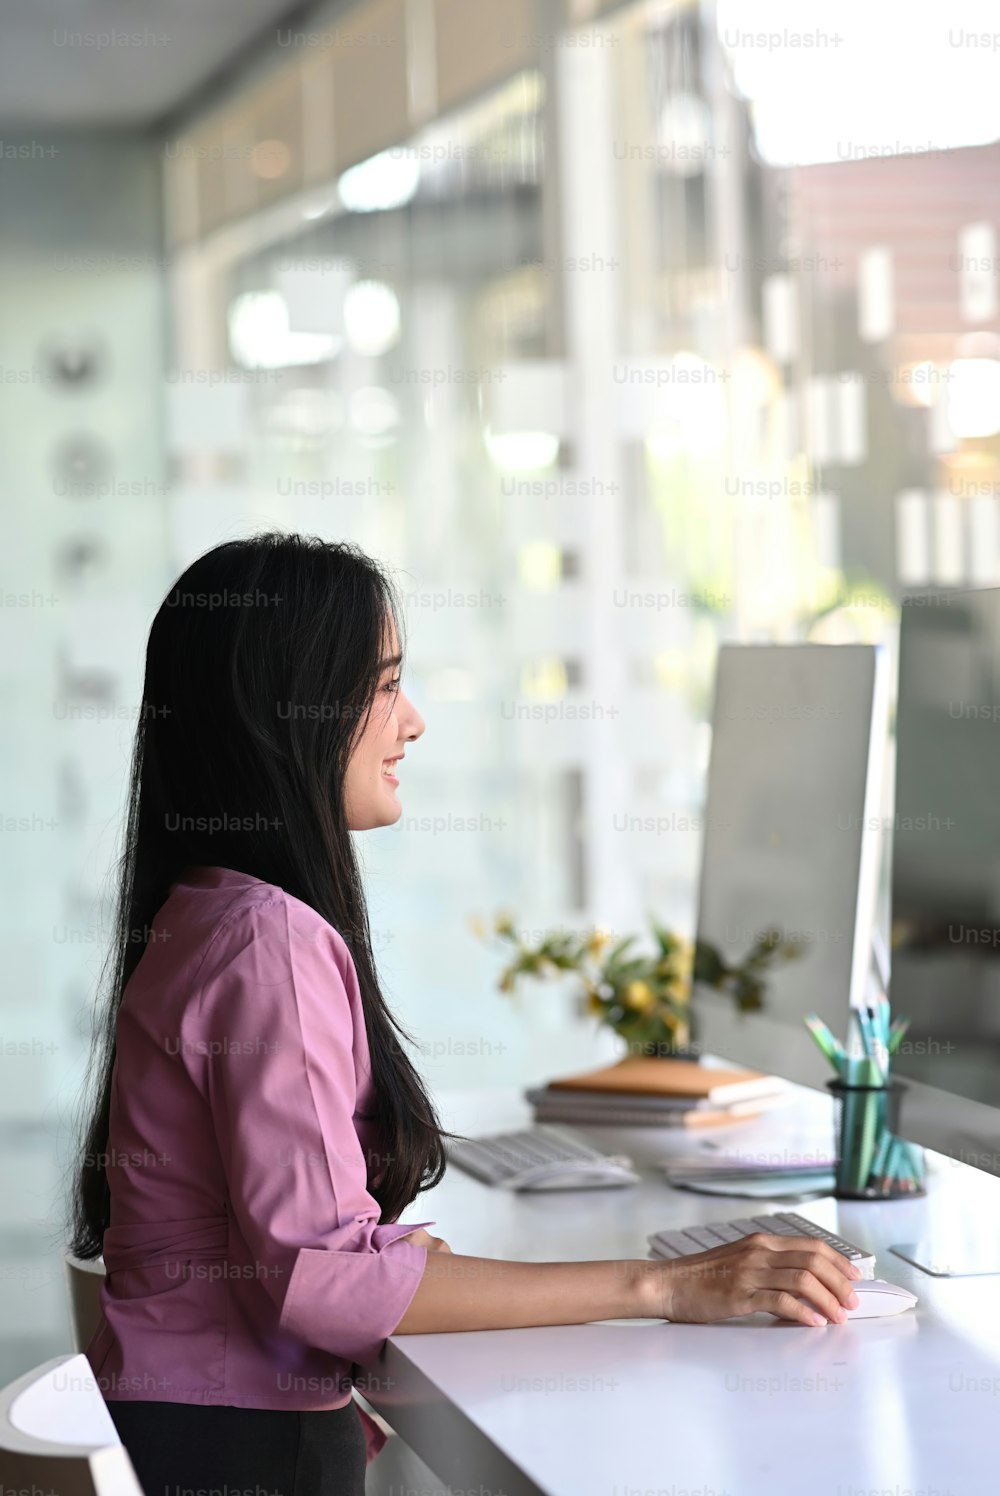 Retrato de uma jovem empresária feliz sentada na cadeira do escritório trabalhando no computador no local de trabalho moderno do distrito de negócios.